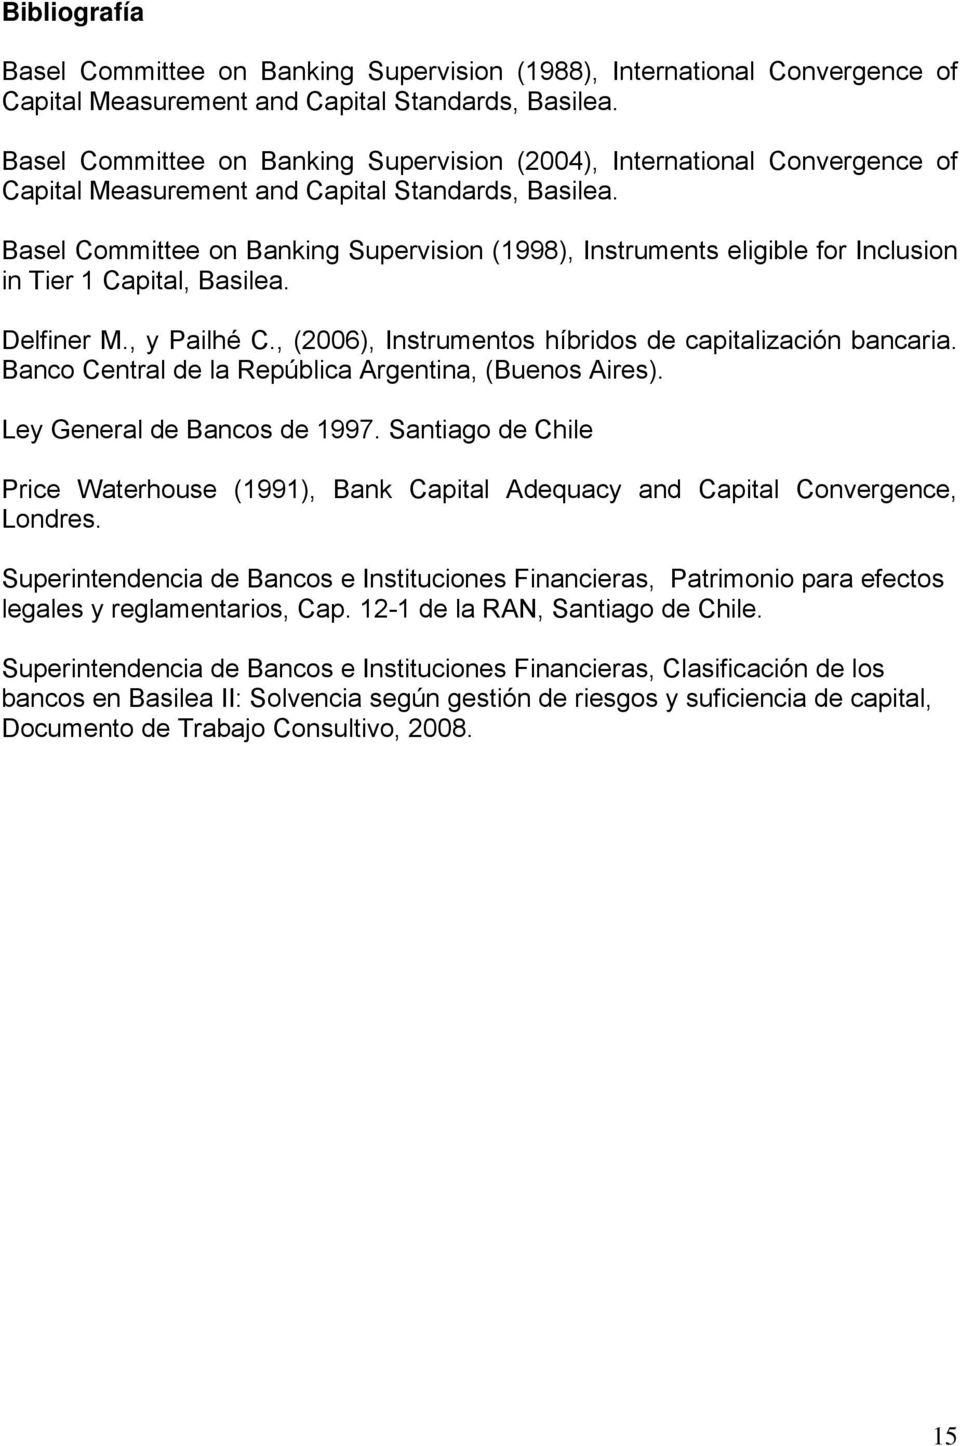 Basel Committee on Banking Supervision (1998), Instruments eligible for Inclusion in Tier 1 Capital, Basilea. Delfiner M., y Pailhé C., (2006), Instrumentos híbridos de capitalización bancaria.